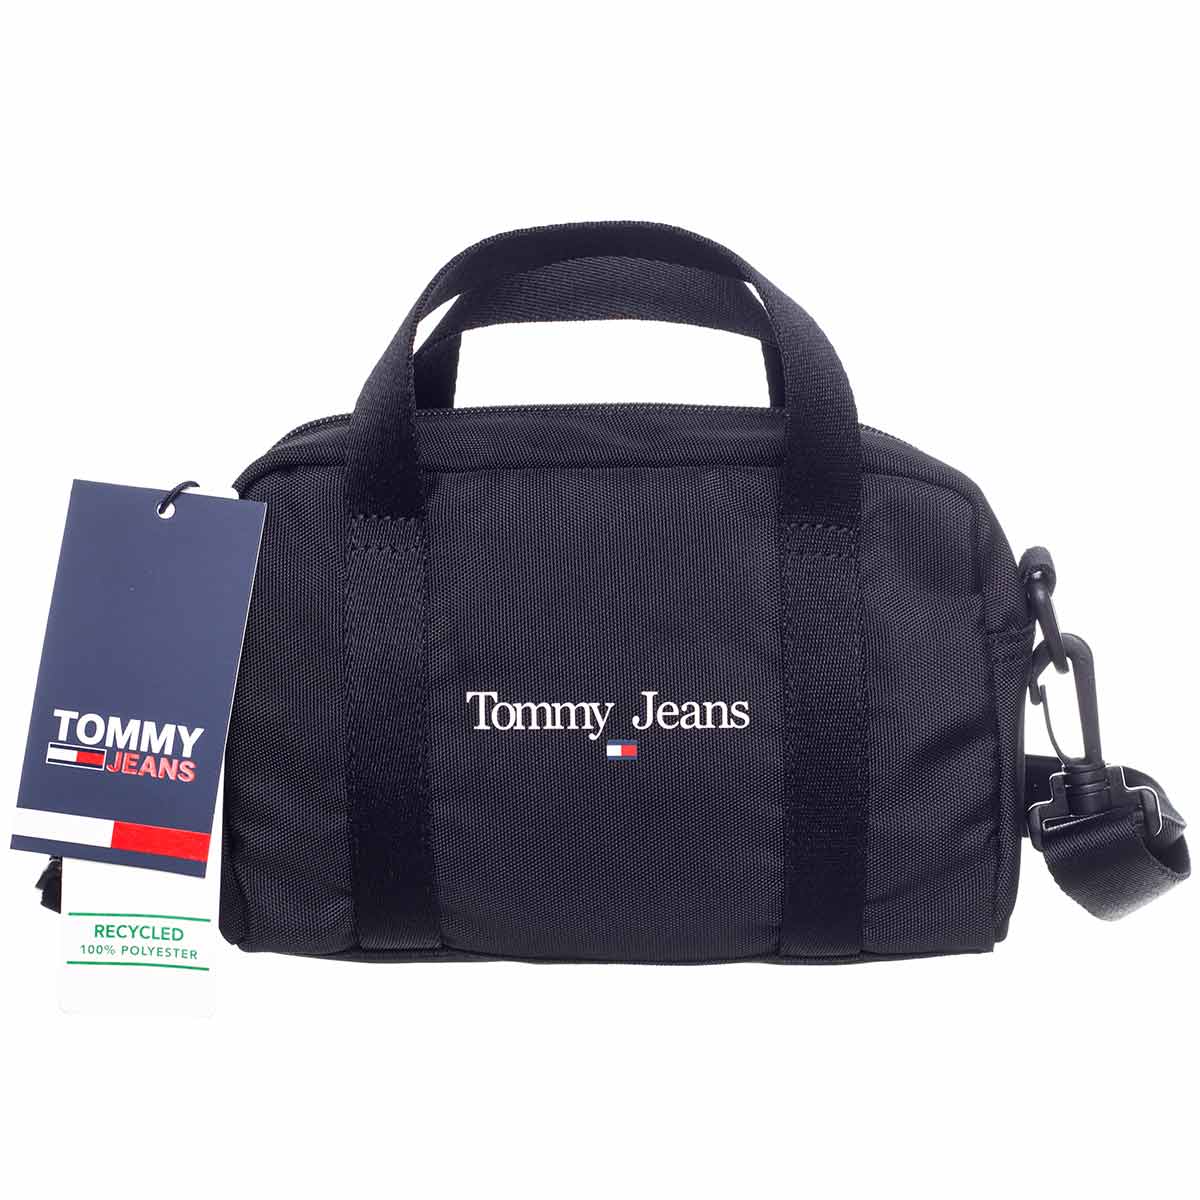 Levně Tommy Hilfiger Jeans Woman's Bag 8720641981231